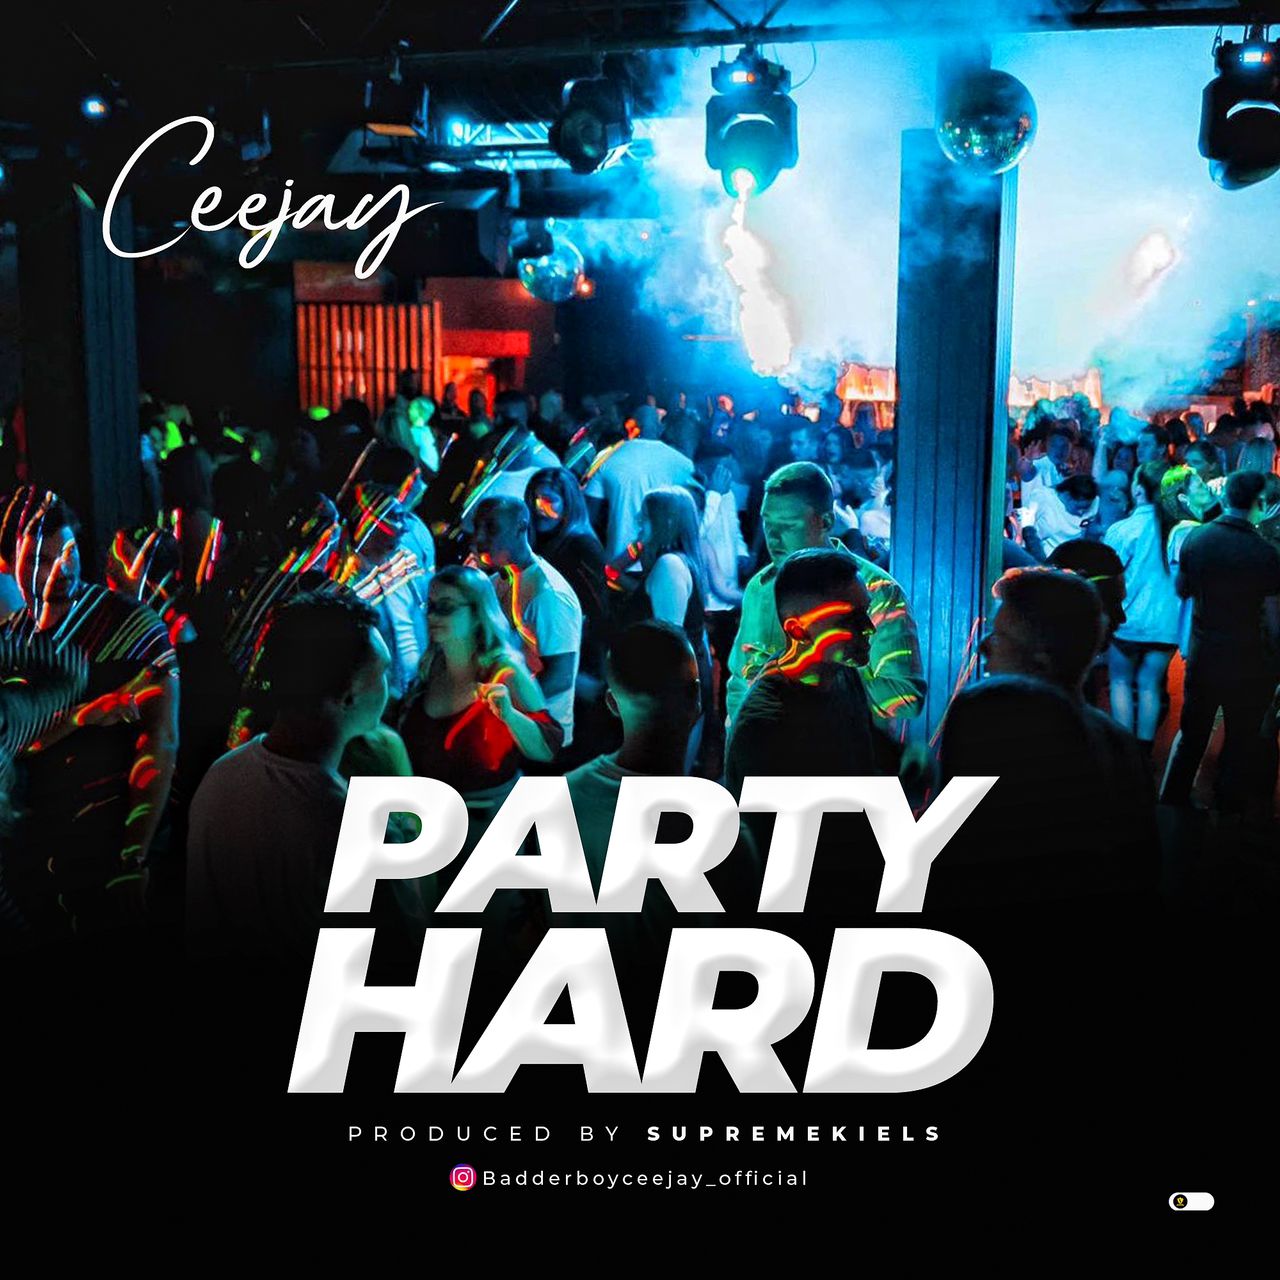 Ceejay – Party Hard